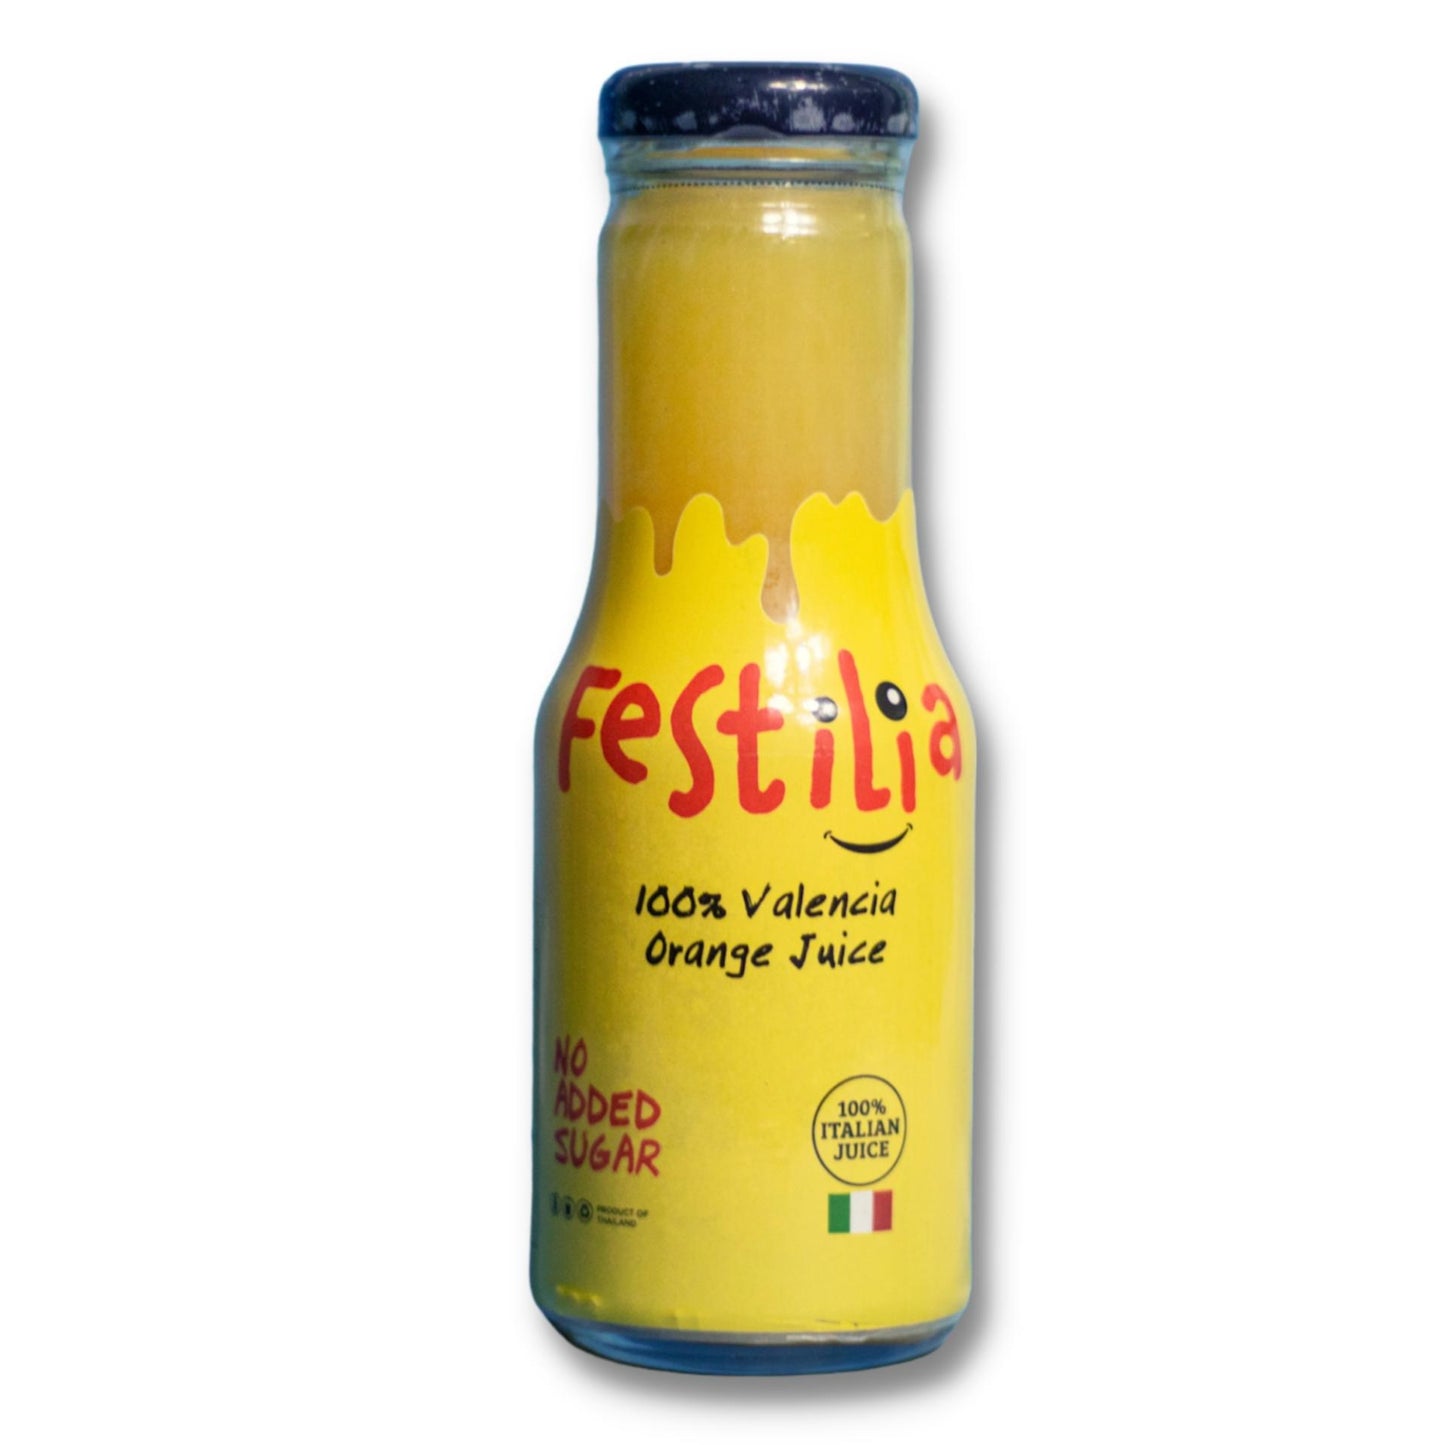 Festilia 100% Valencia Orange Juice